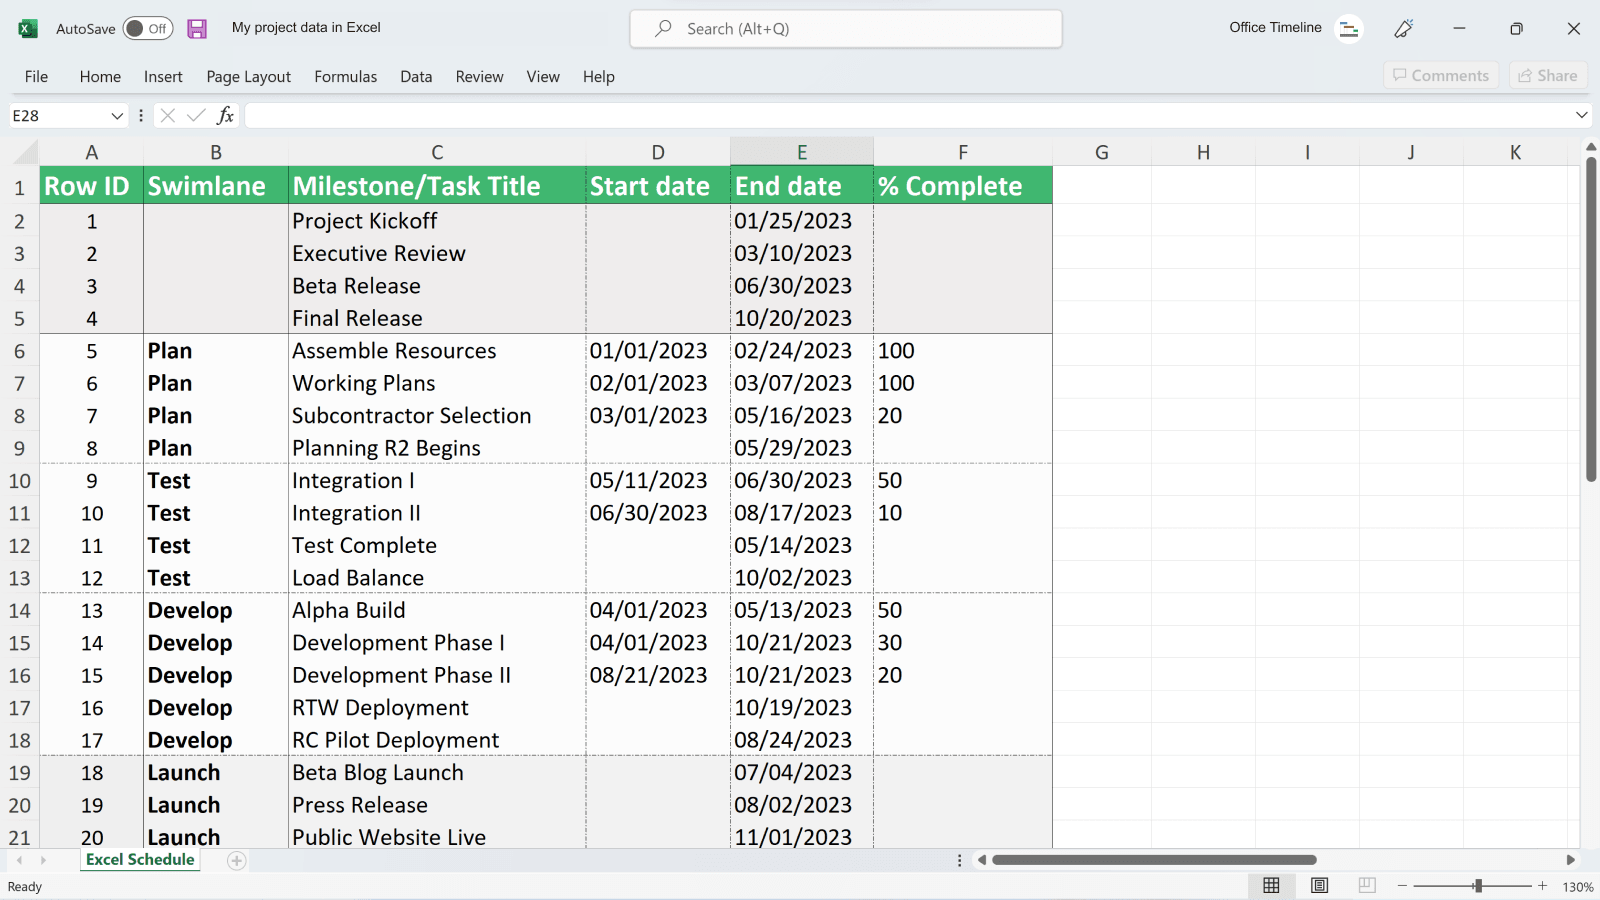 Projektdaten in Excel vor dem Import in Office Timeline Pro